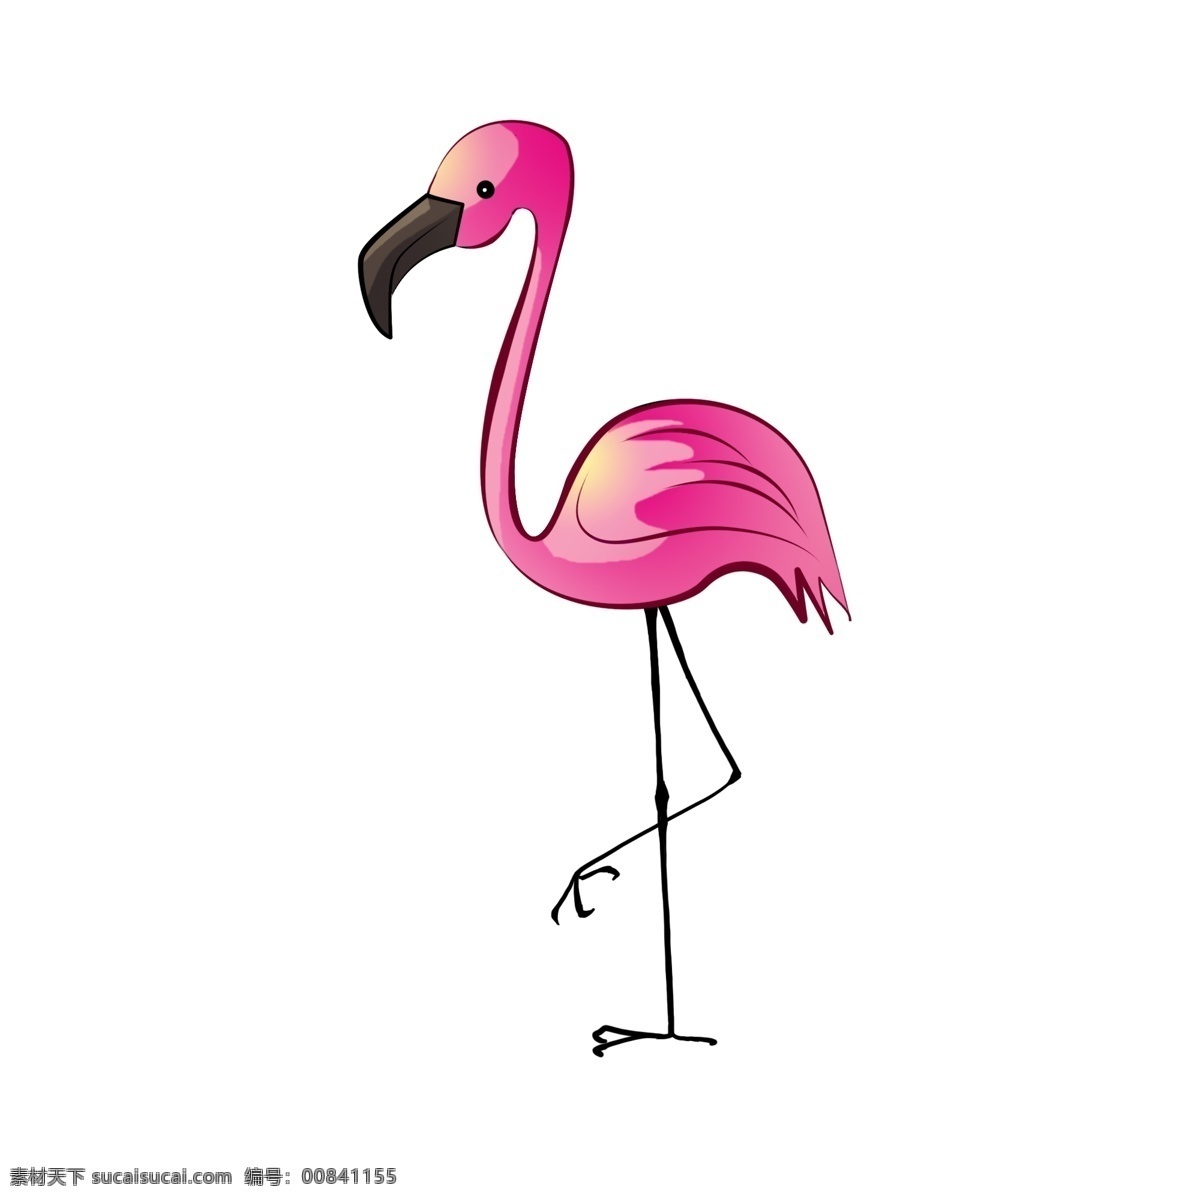 粉色 可爱 火烈鸟 动物 装饰